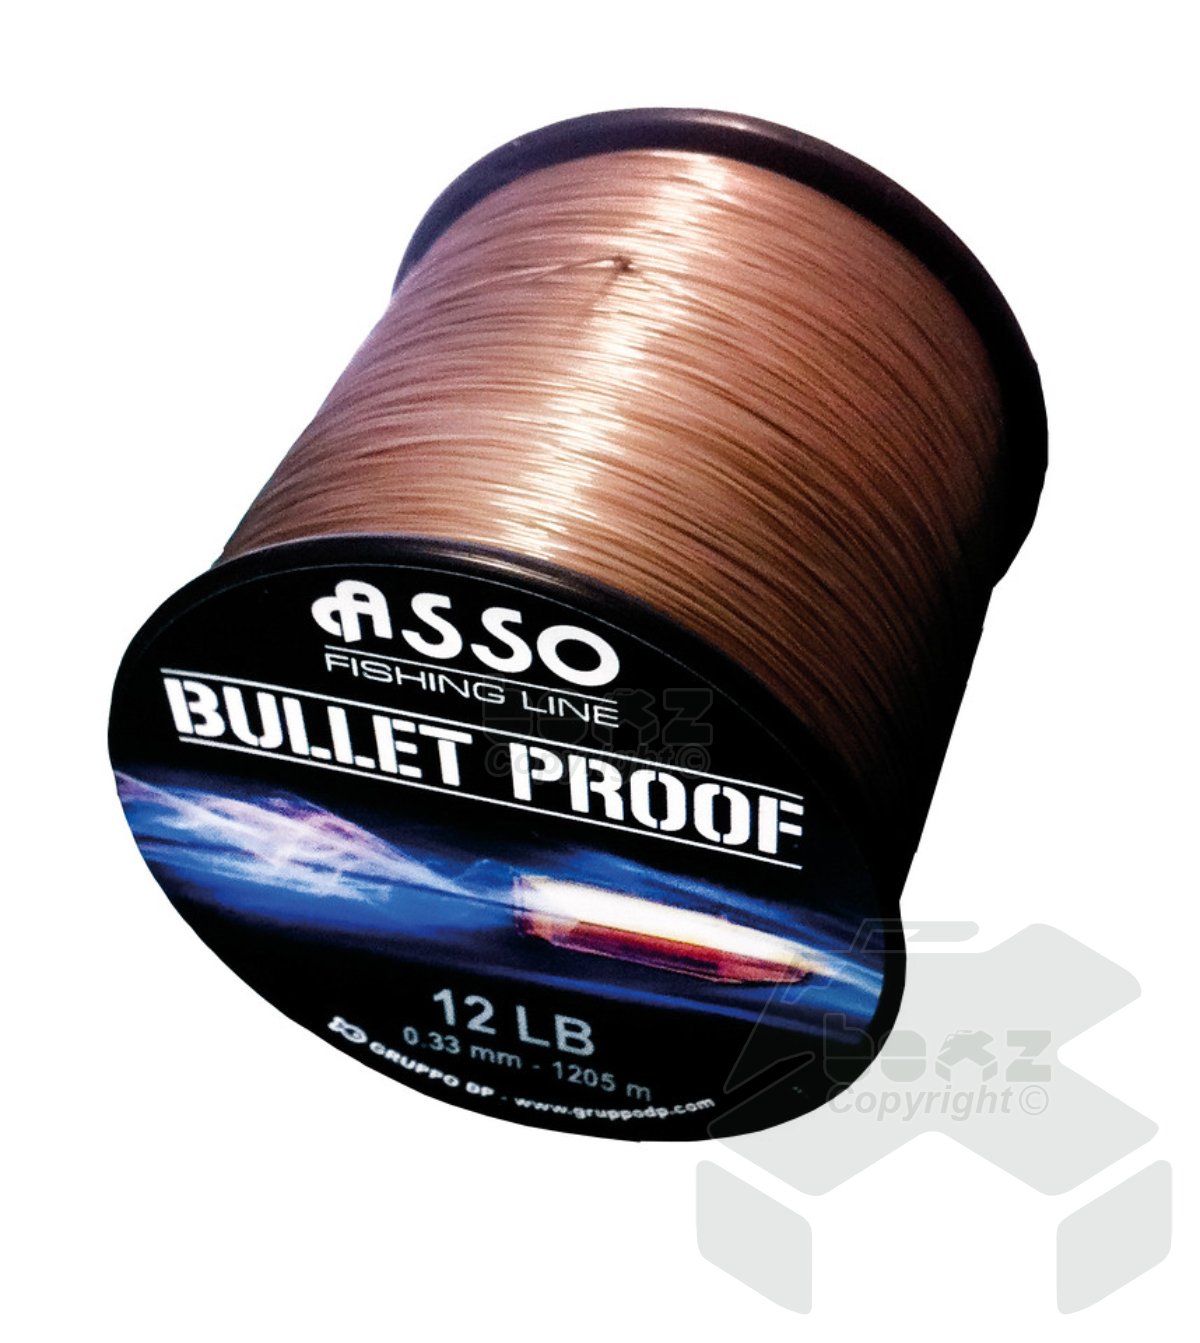 Asso Bullet Proof 40z Spool